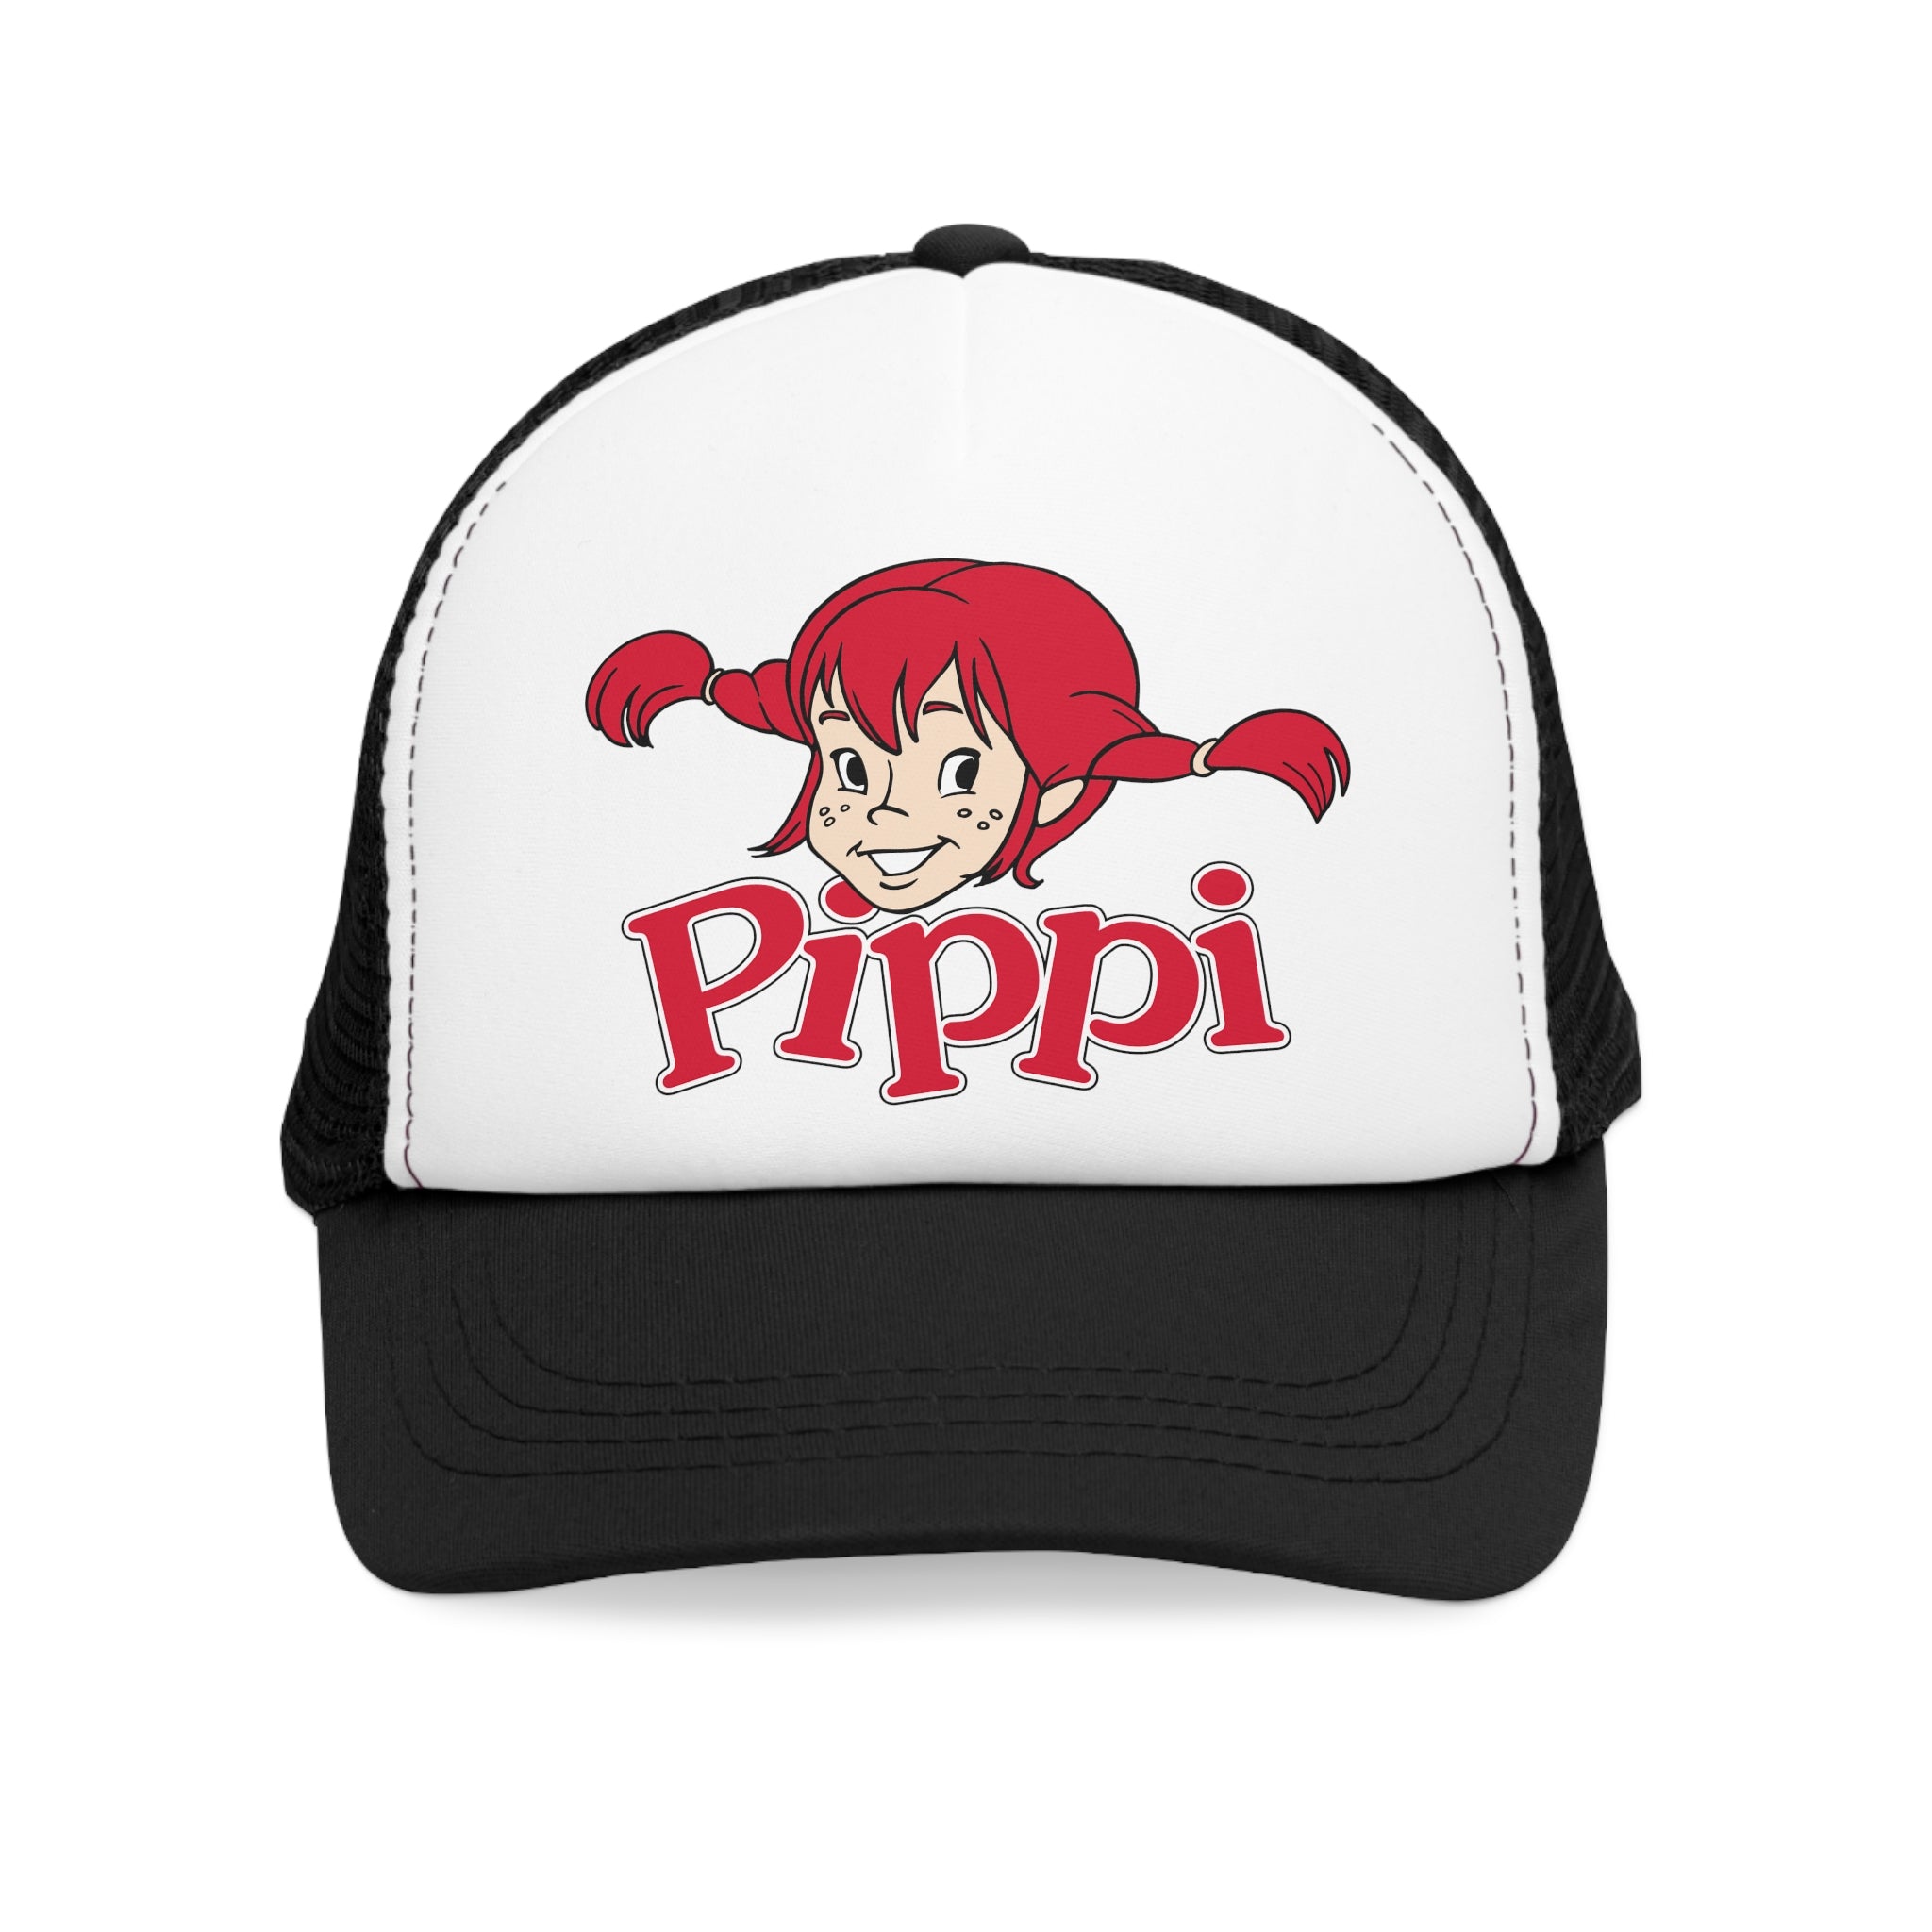 Pippi Longstocking Mesh Trucker Cap